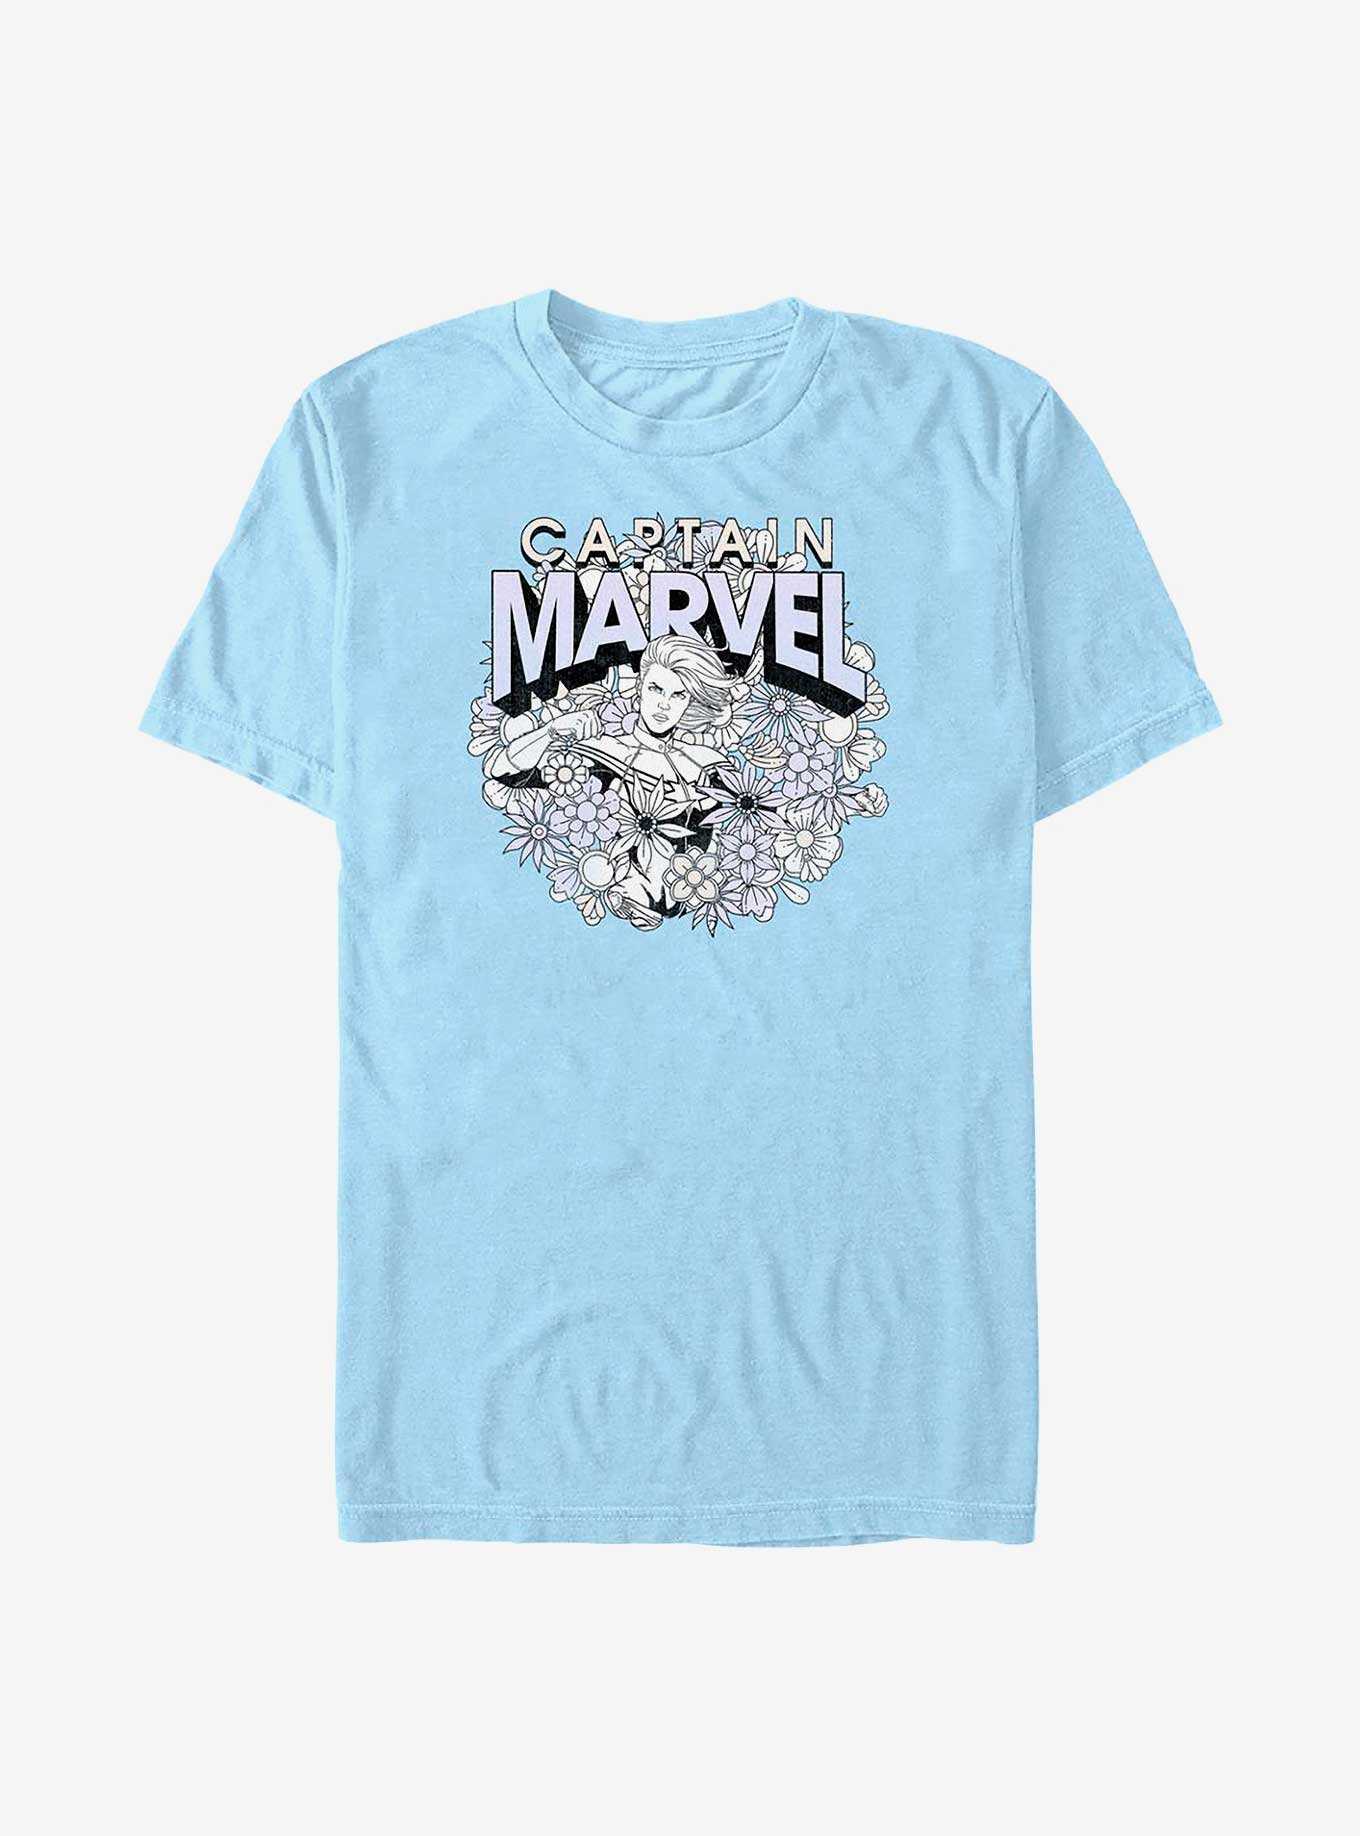 Marvel Captain Marvel Captain Marvel Spring T-Shirt, , hi-res